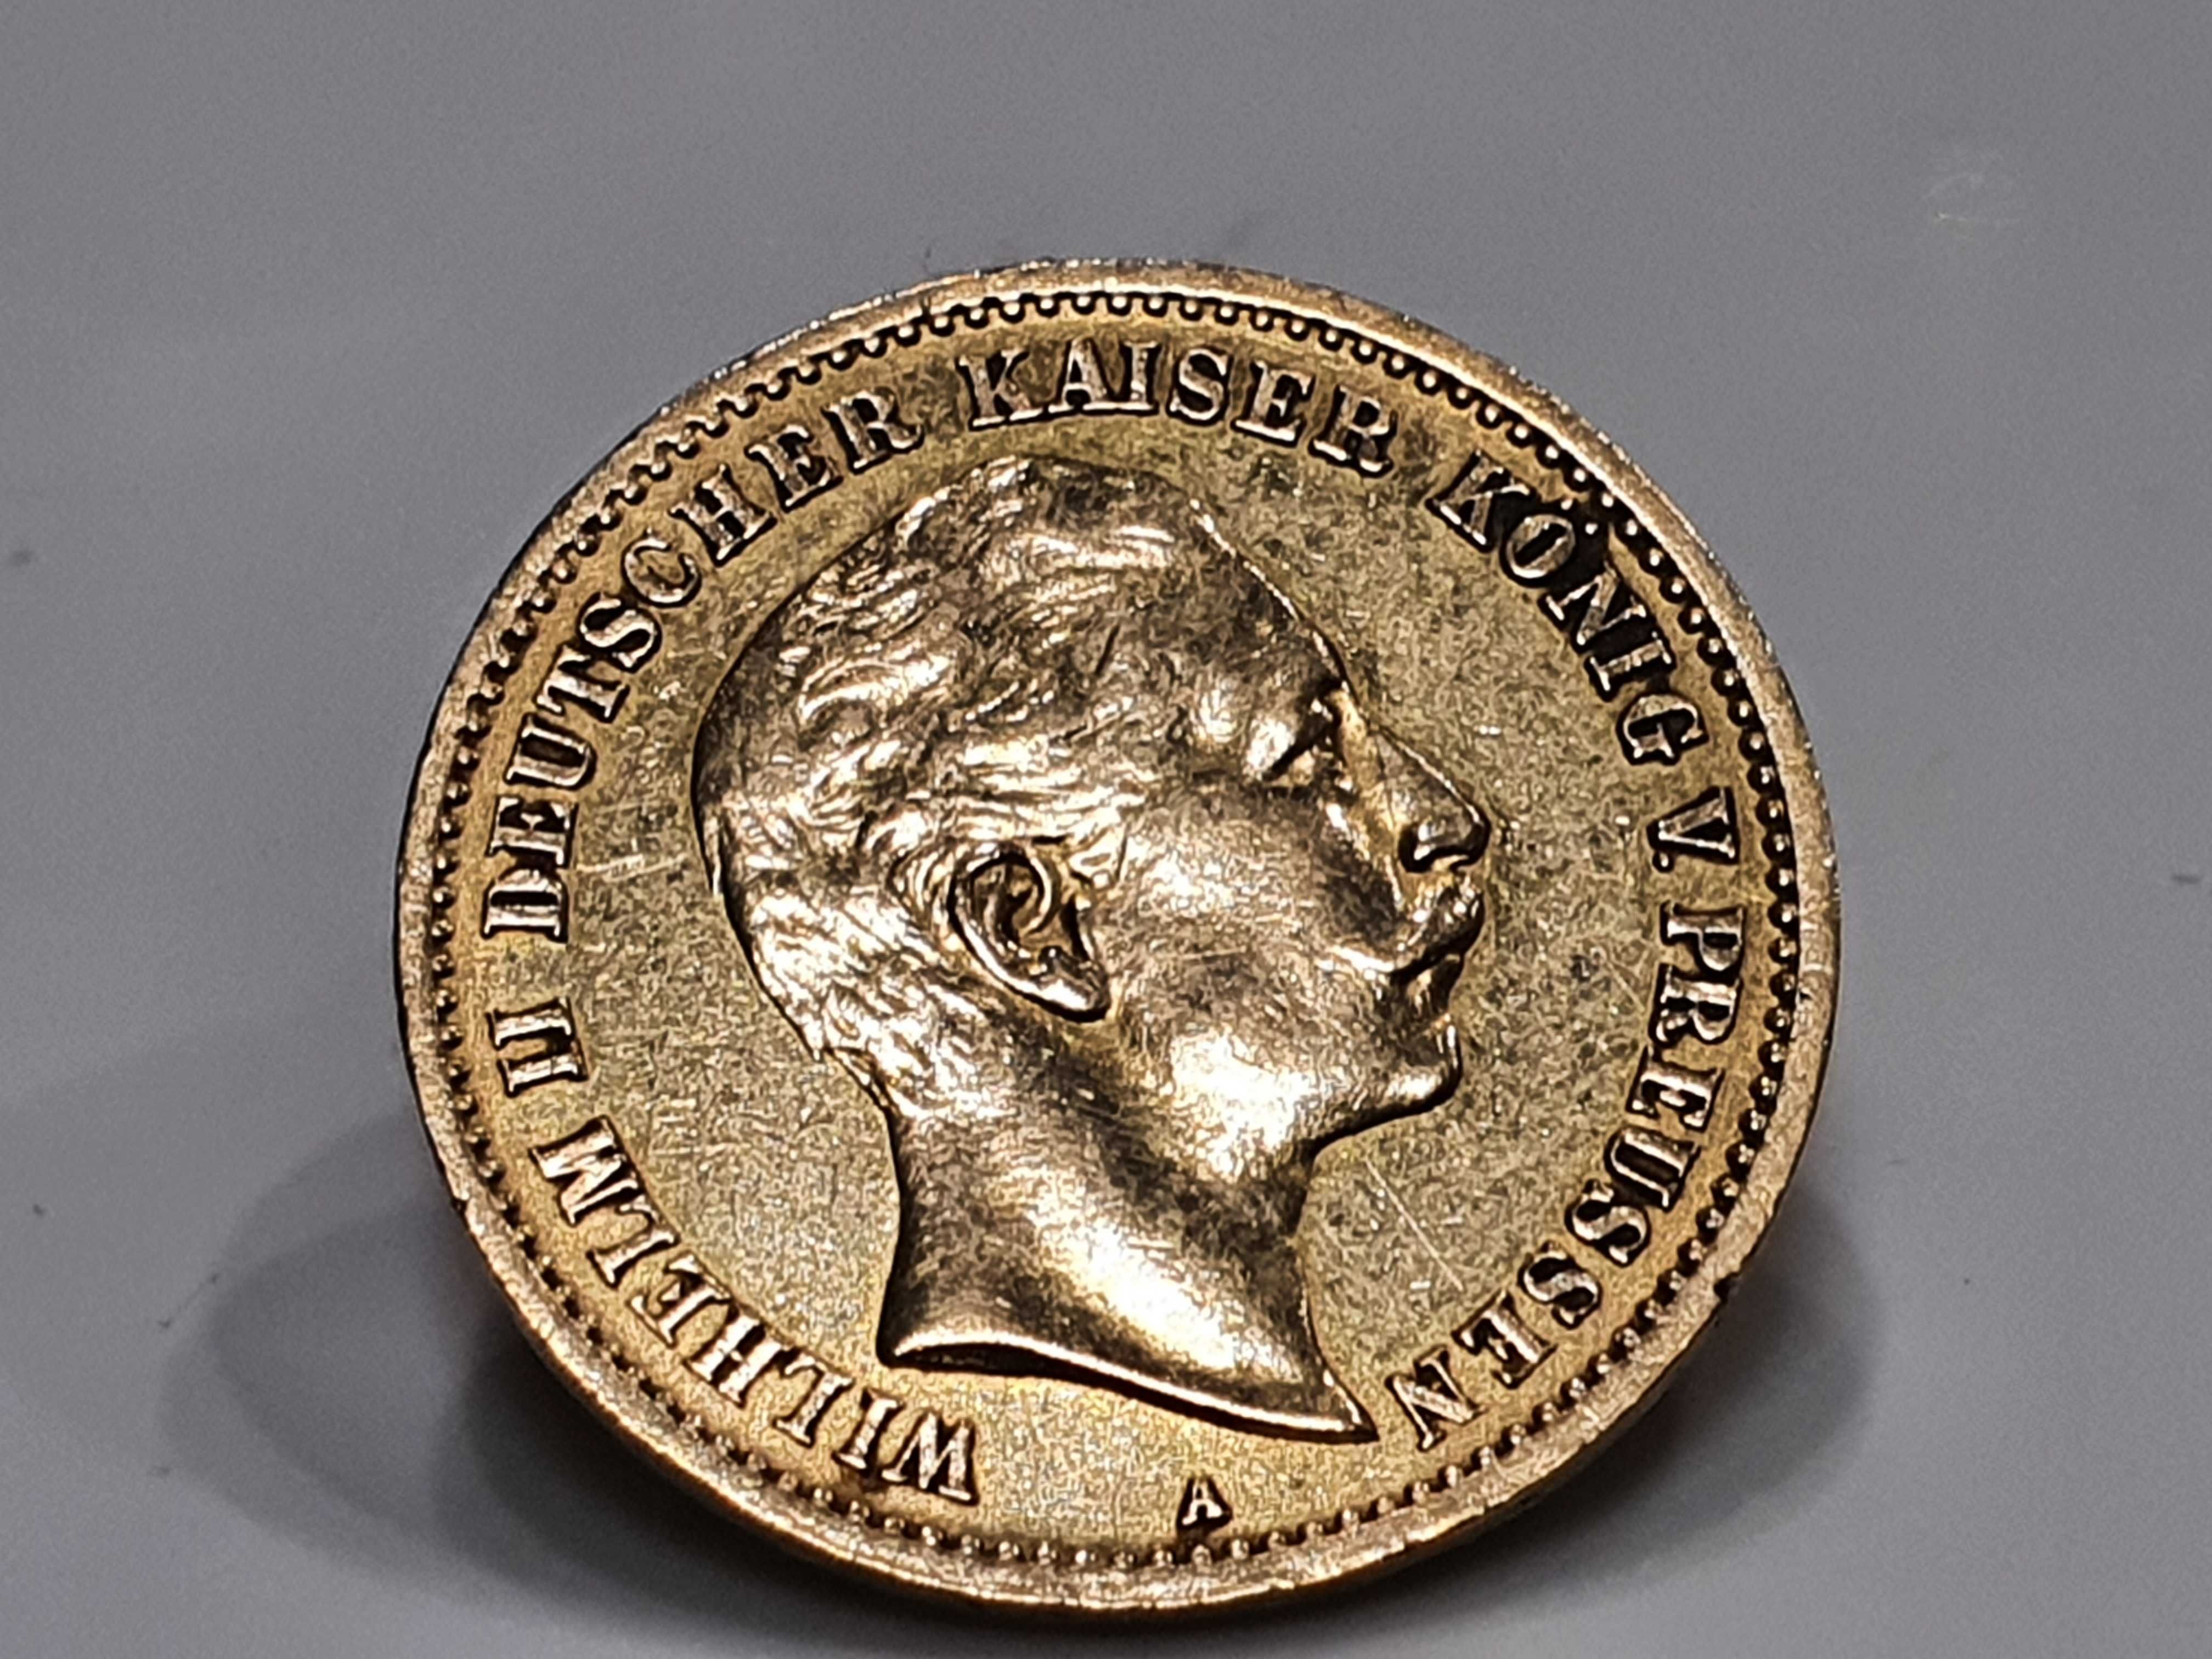 10 marek Niemcy 1910 r moneta złota Au